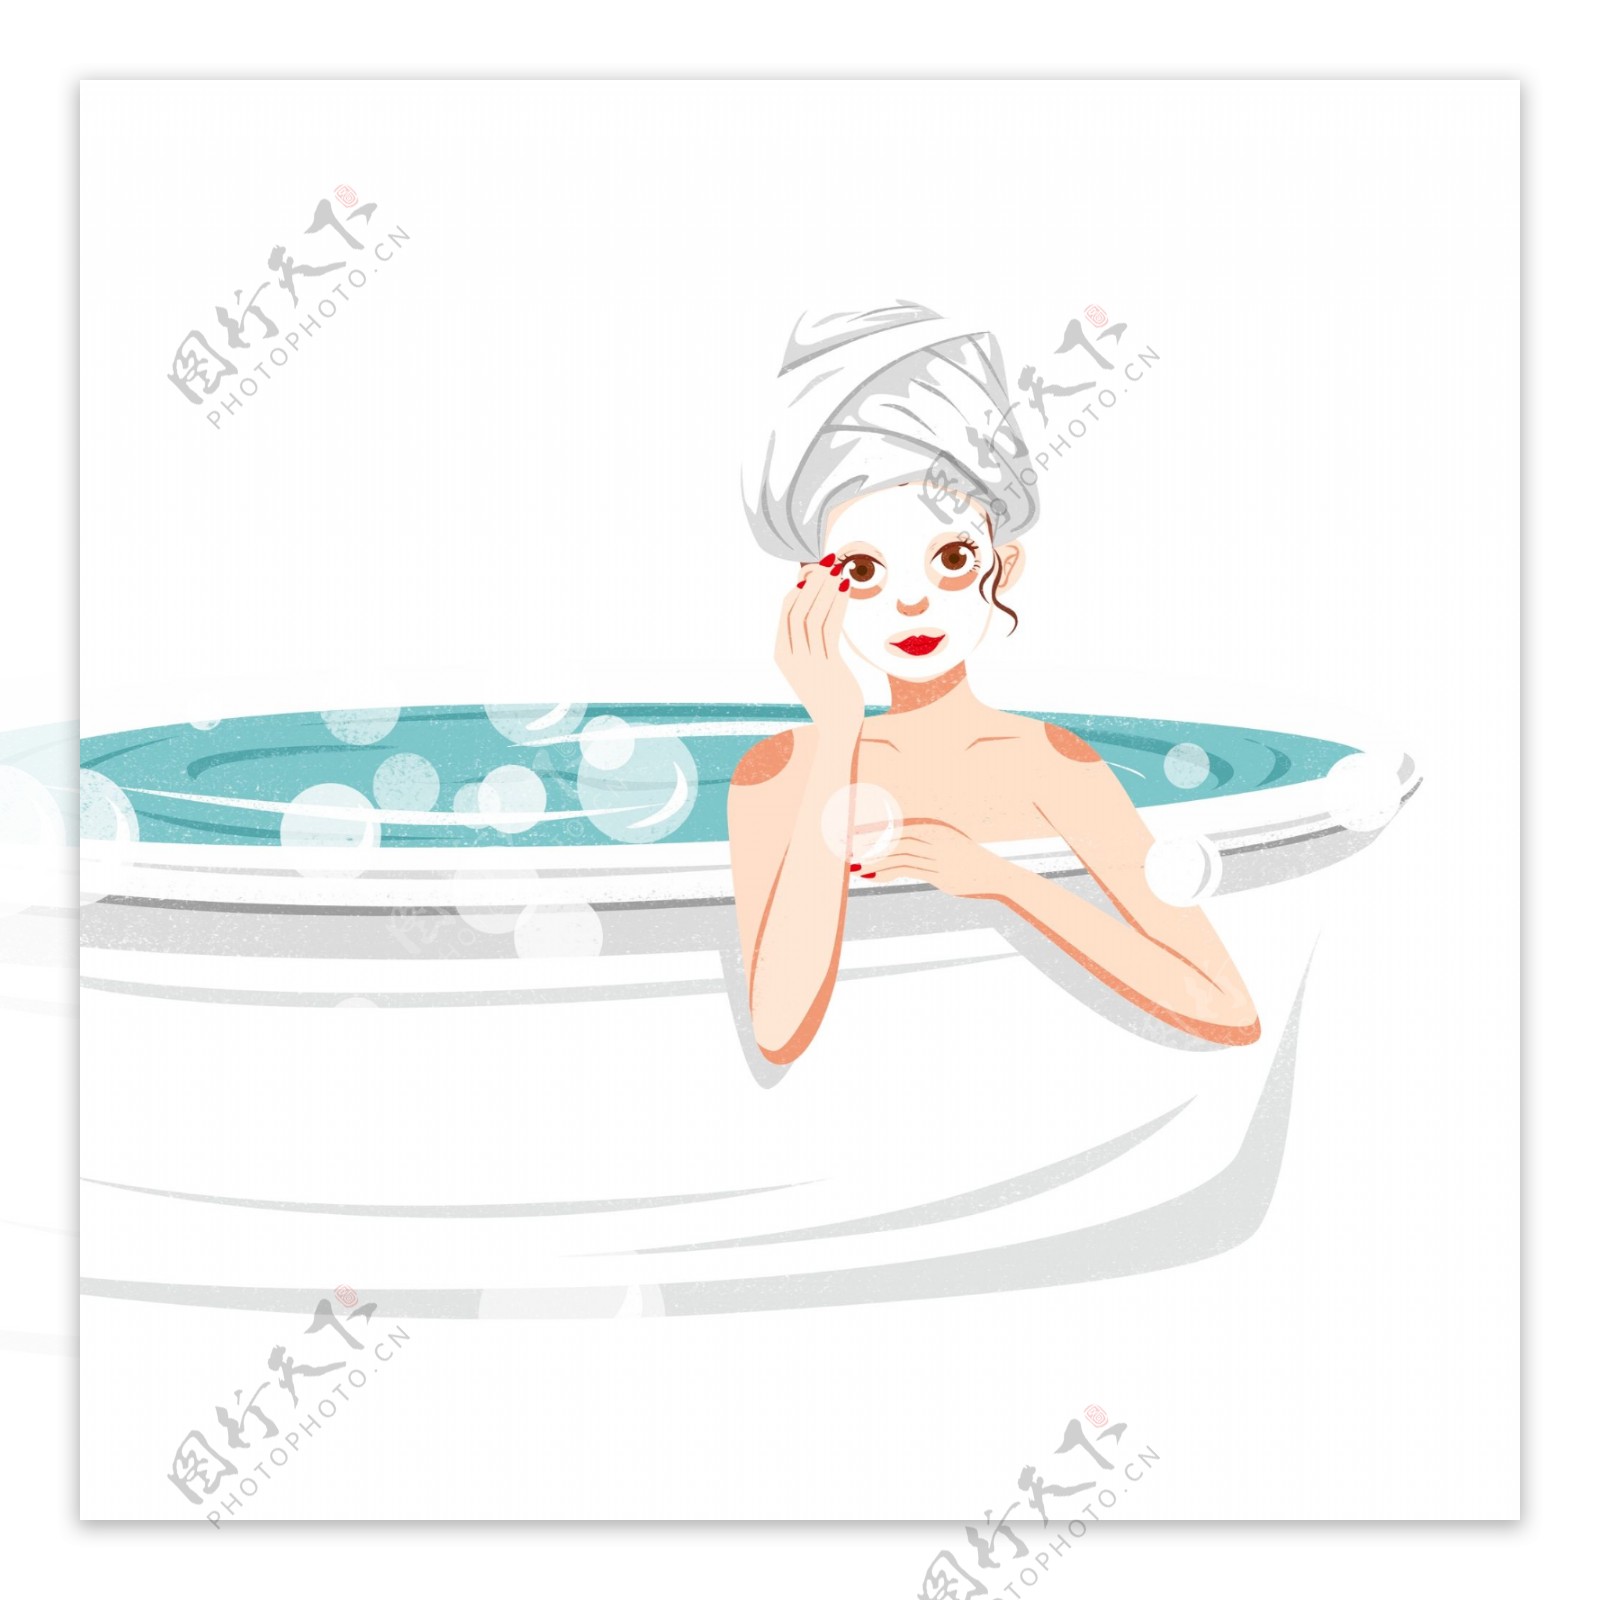 卡通浴缸里泡澡的女孩人物设计